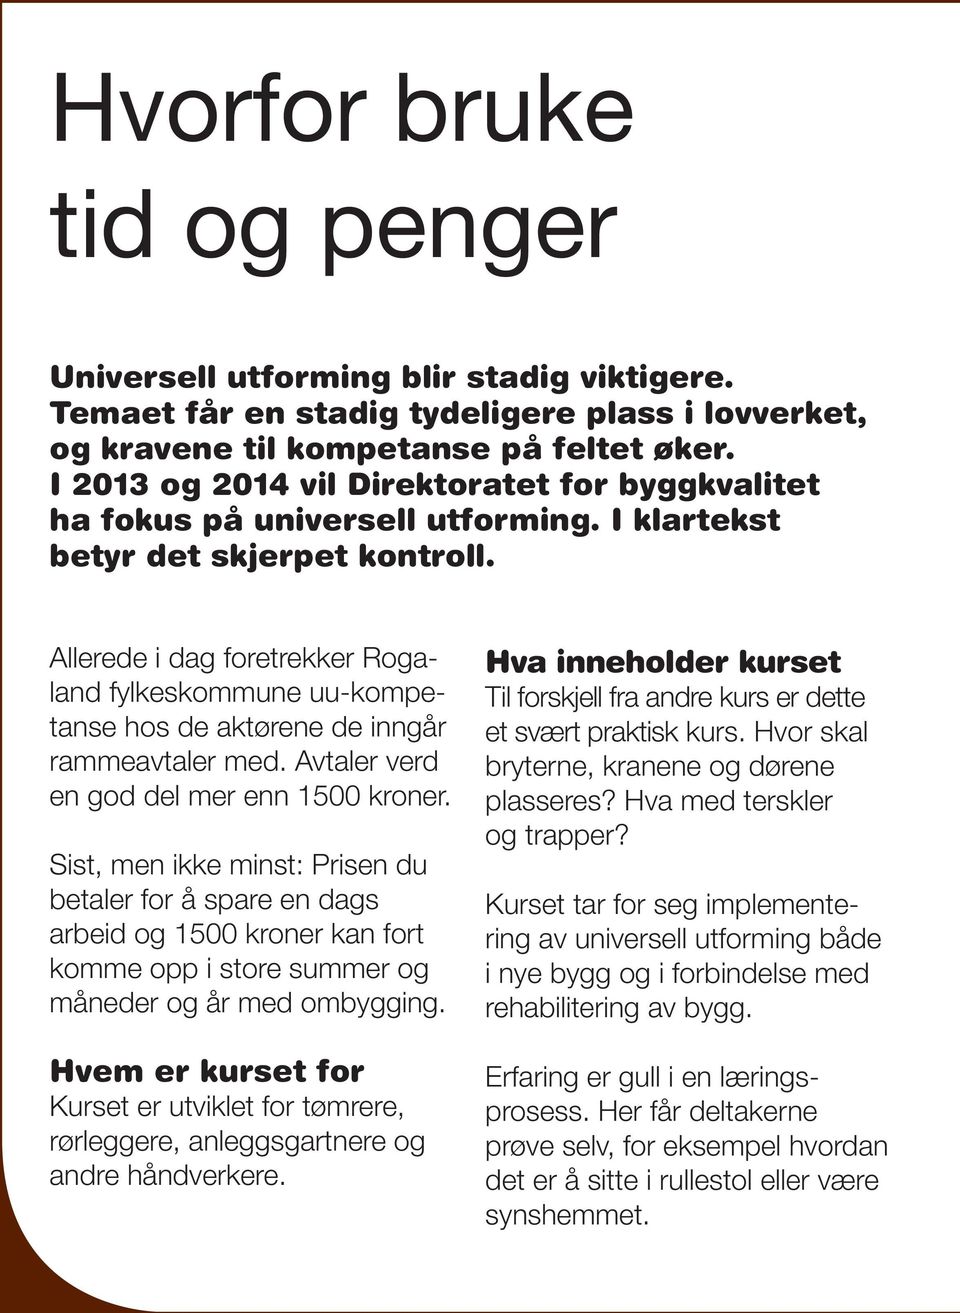 Allerede i dag foretrekker Rogaland fylkeskommune uu-kompetanse hos de aktørene de inngår rammeavtaler med. Avtaler verd en god del mer enn 1500 kroner.